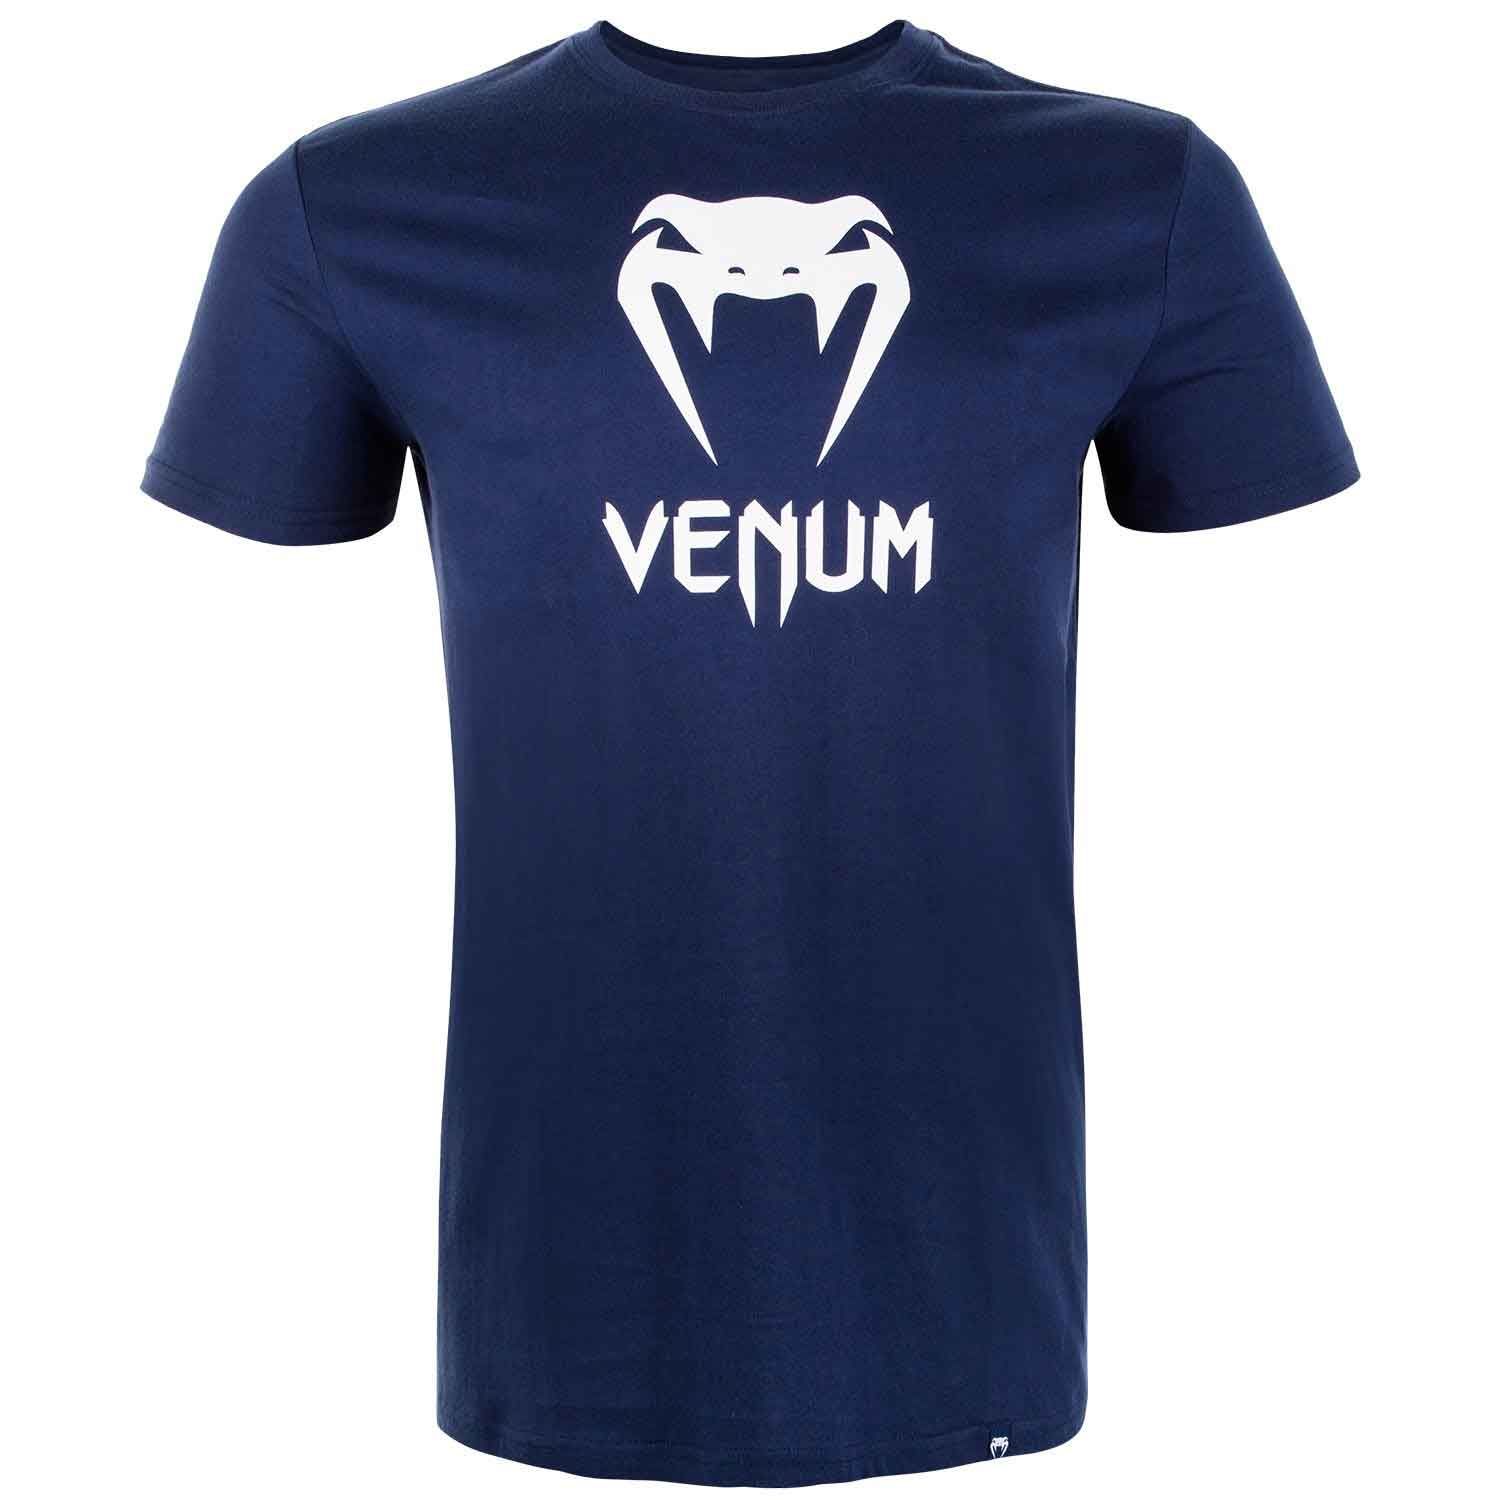 VENUM CLASSIC T-SHIRT／ヴェナム クラシック Tシャツ（ネイビーブルー）